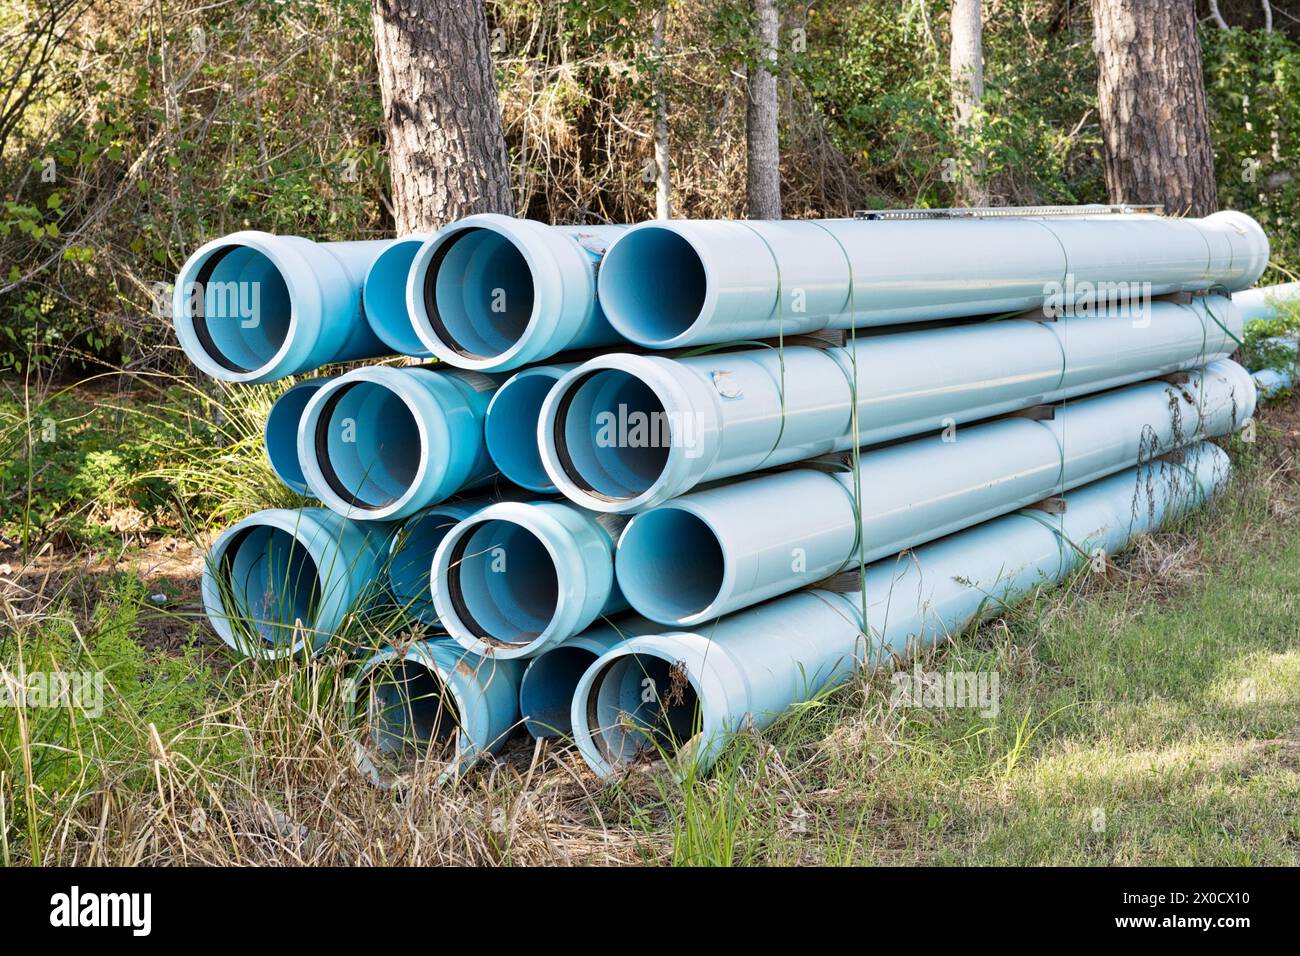 Faisceau de tuyaux pour la construction de conduites d'eau souterraine, équipement industriel en plastique bleu pvc d'égout par la zone forestière, Houston TX USA. Banque D'Images